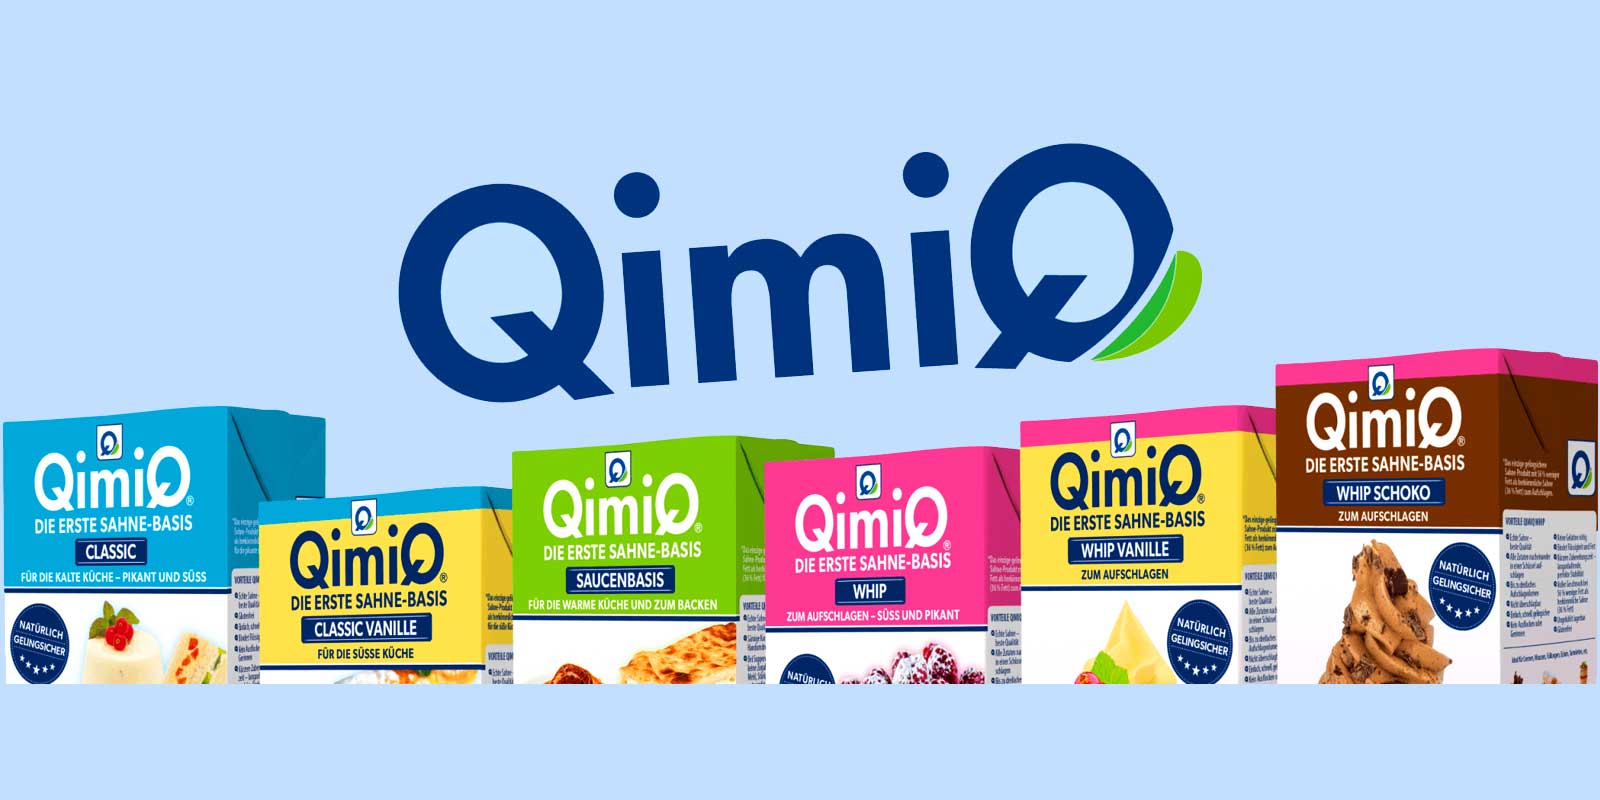 QimiQ proizvodi QimiQ je prva lagana kremasta baza sa samo 15% masti. Neutralnog je okusa pa je pogodan za slatka i slana jela, kao i za topla i hladna jela. QimiQ je 100% prirodan proizvod.